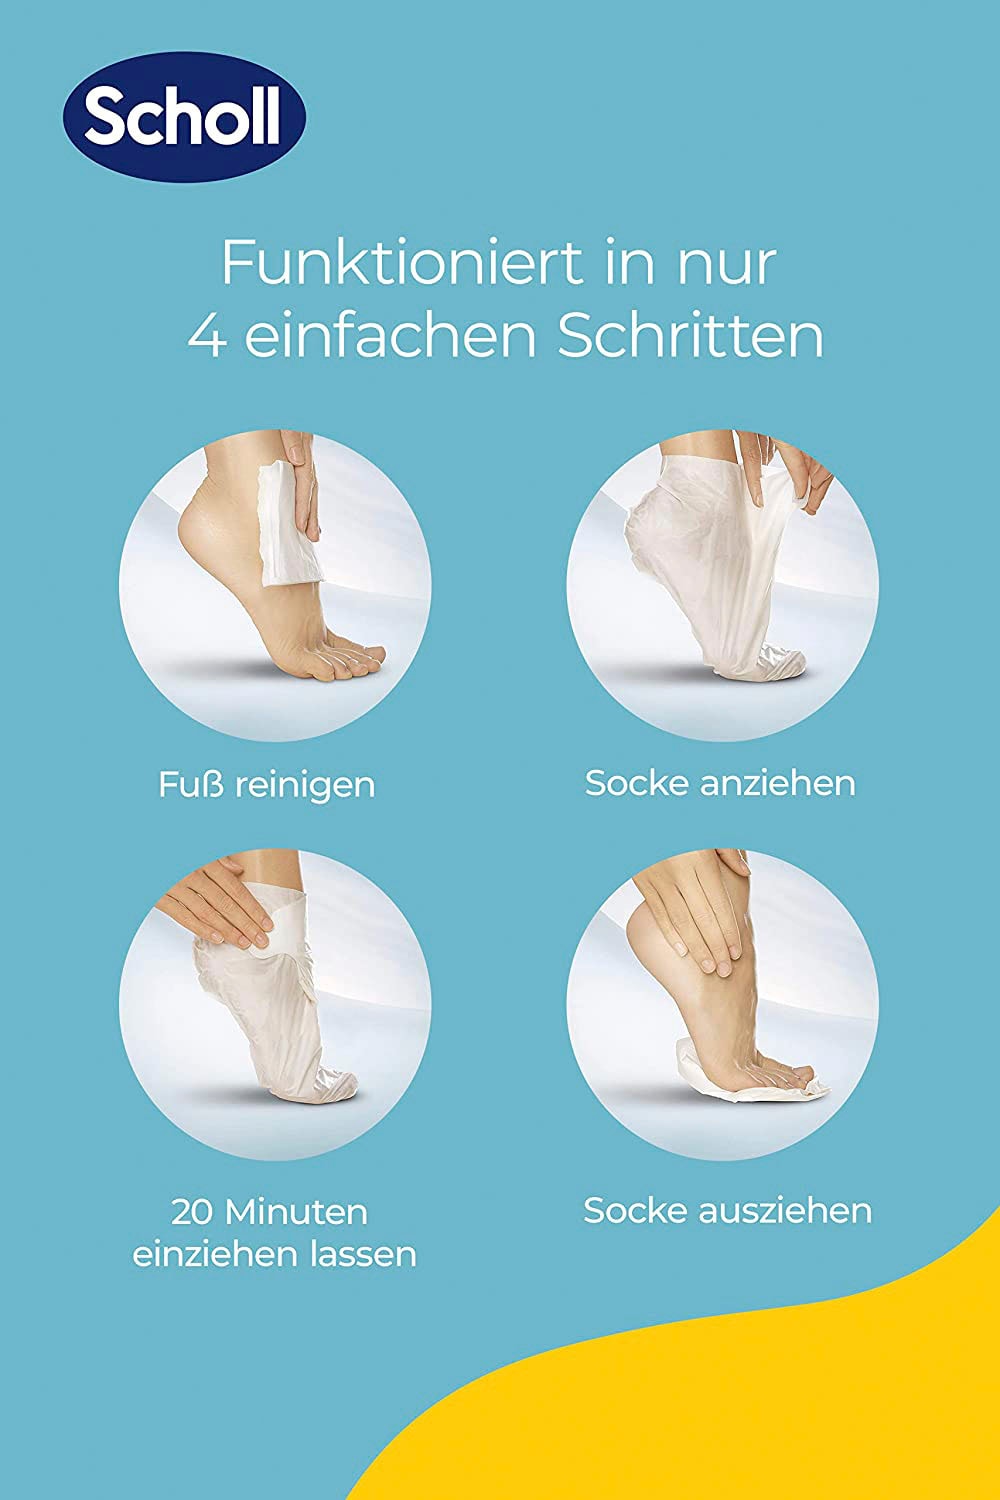 Scholl Fußmaske »ExpertCare«, mit Aloe Vera in Socken intensiv pflegend  online kaufen | BAUR